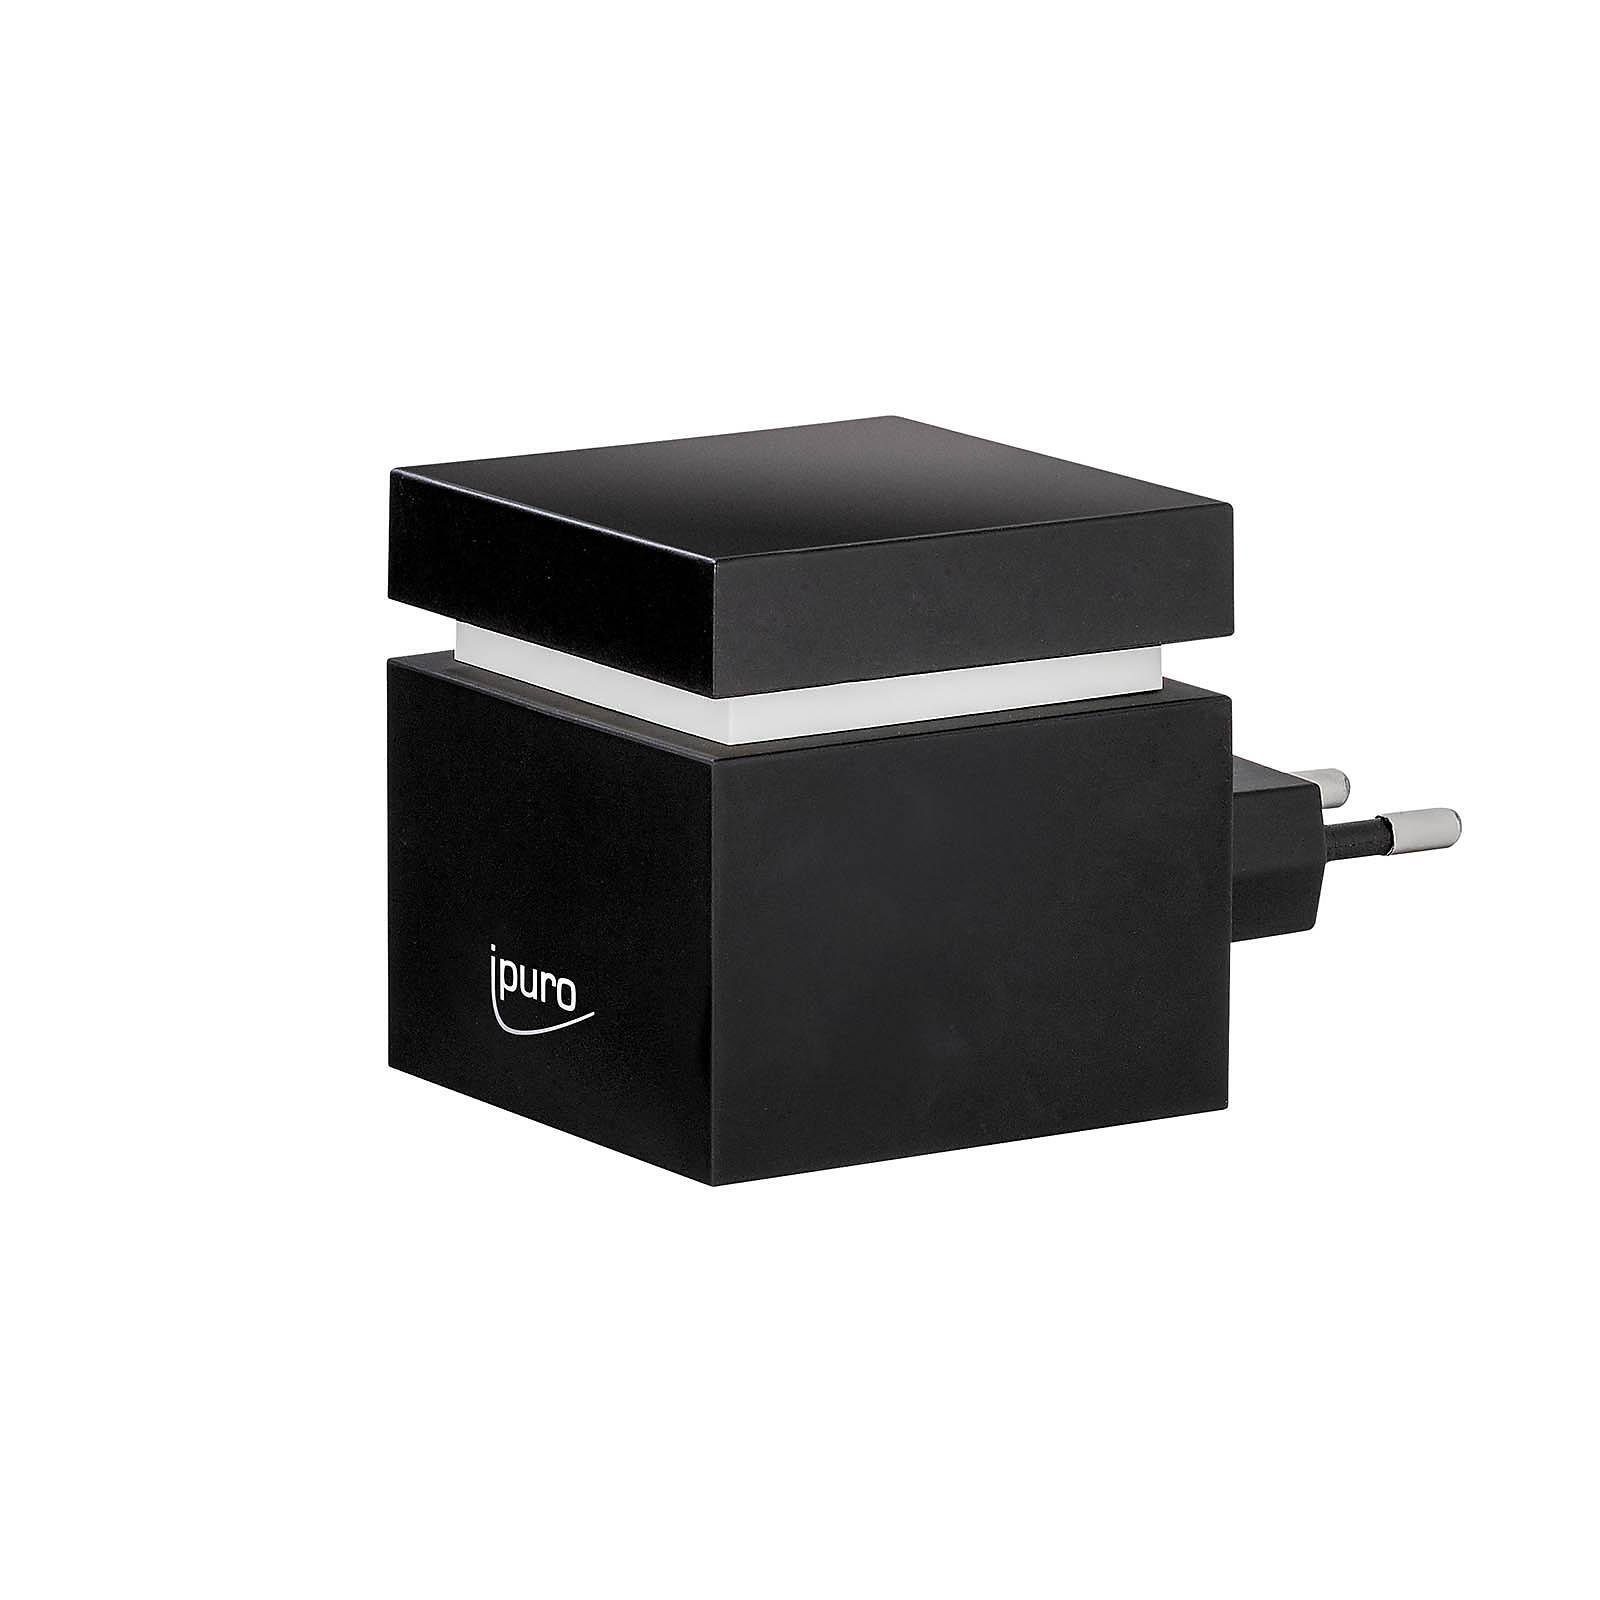 IPURO Duftlampe Elektrischer Aroma-Diffusor Plug-In Cube (Packung, 1 St., 1 Stück Elektrischer Aroma-Diffusor Plug-In Cube), aus Aroma-Diffusor, B 5.5 Zentimeter, H 9.3 Zentimeter, T 5.5 Zentimeter